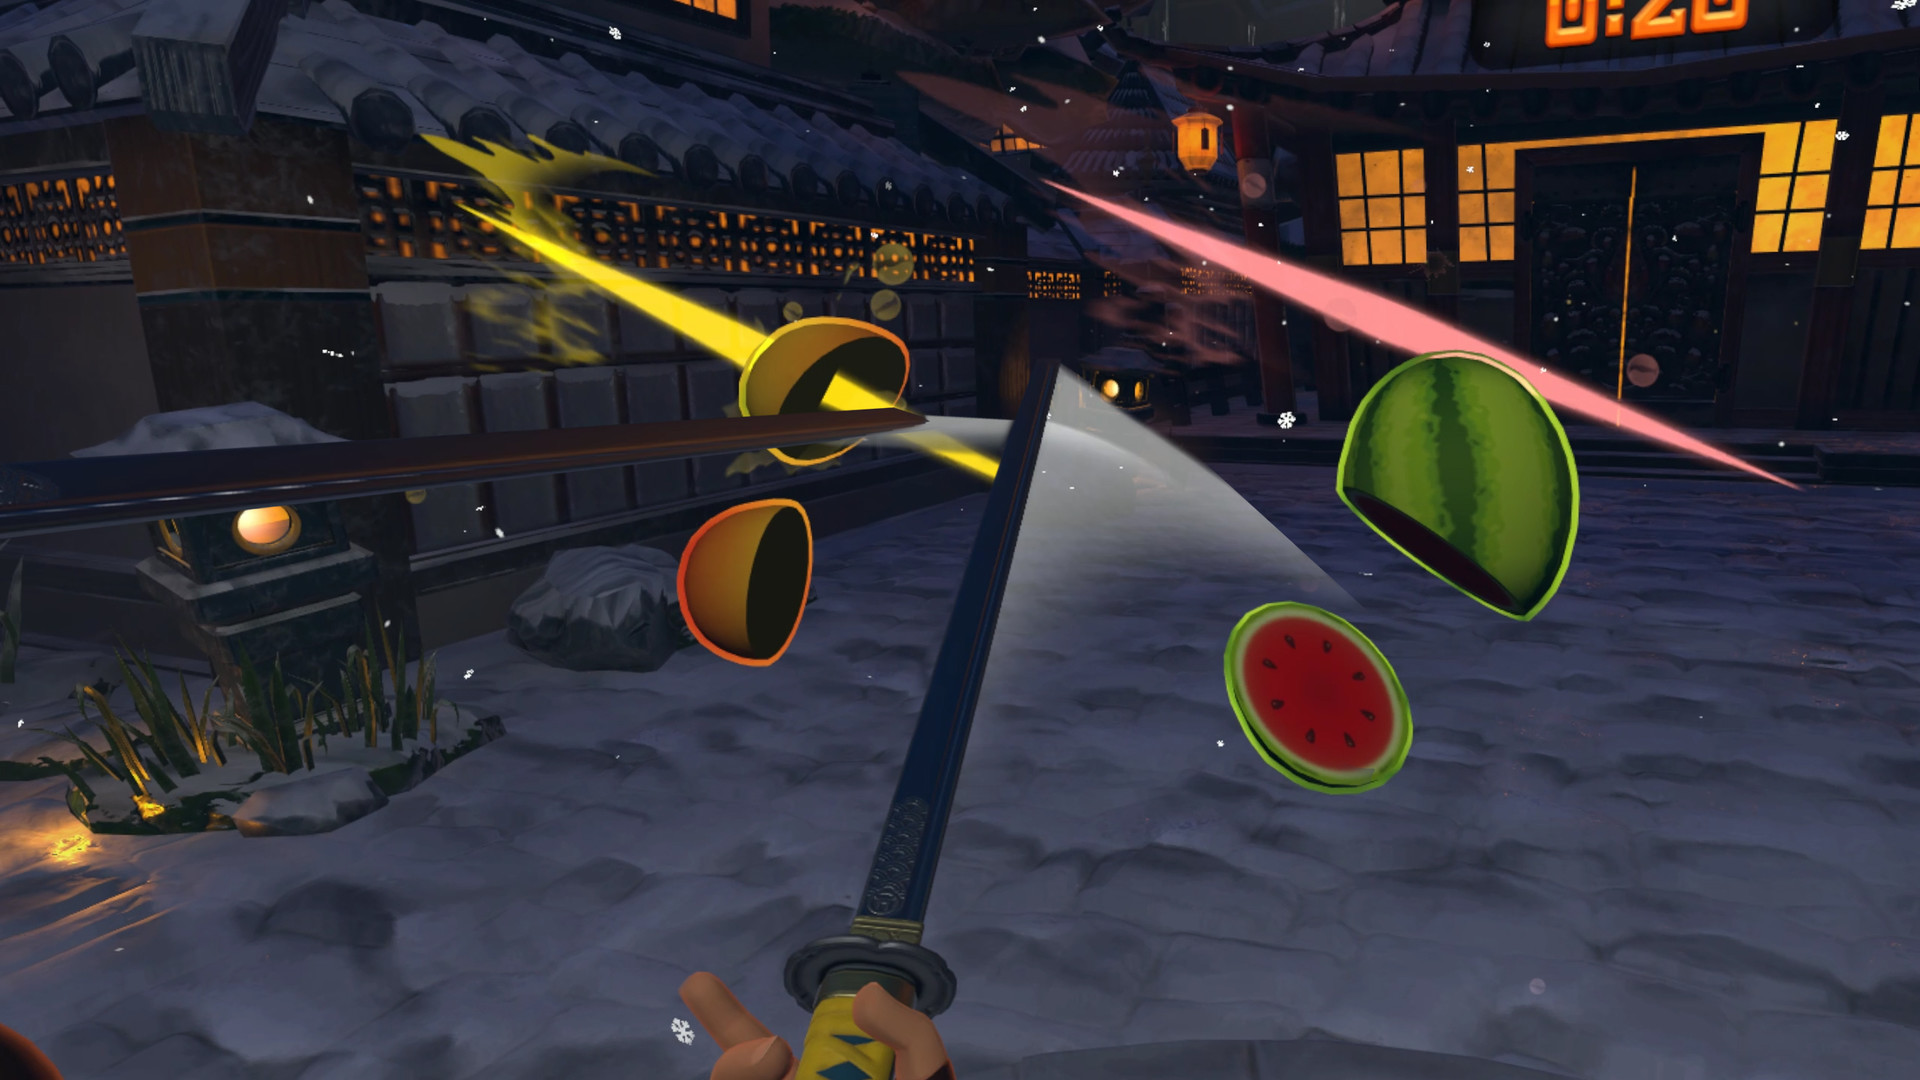 What's On Steam - Fruit Ninja VR 2